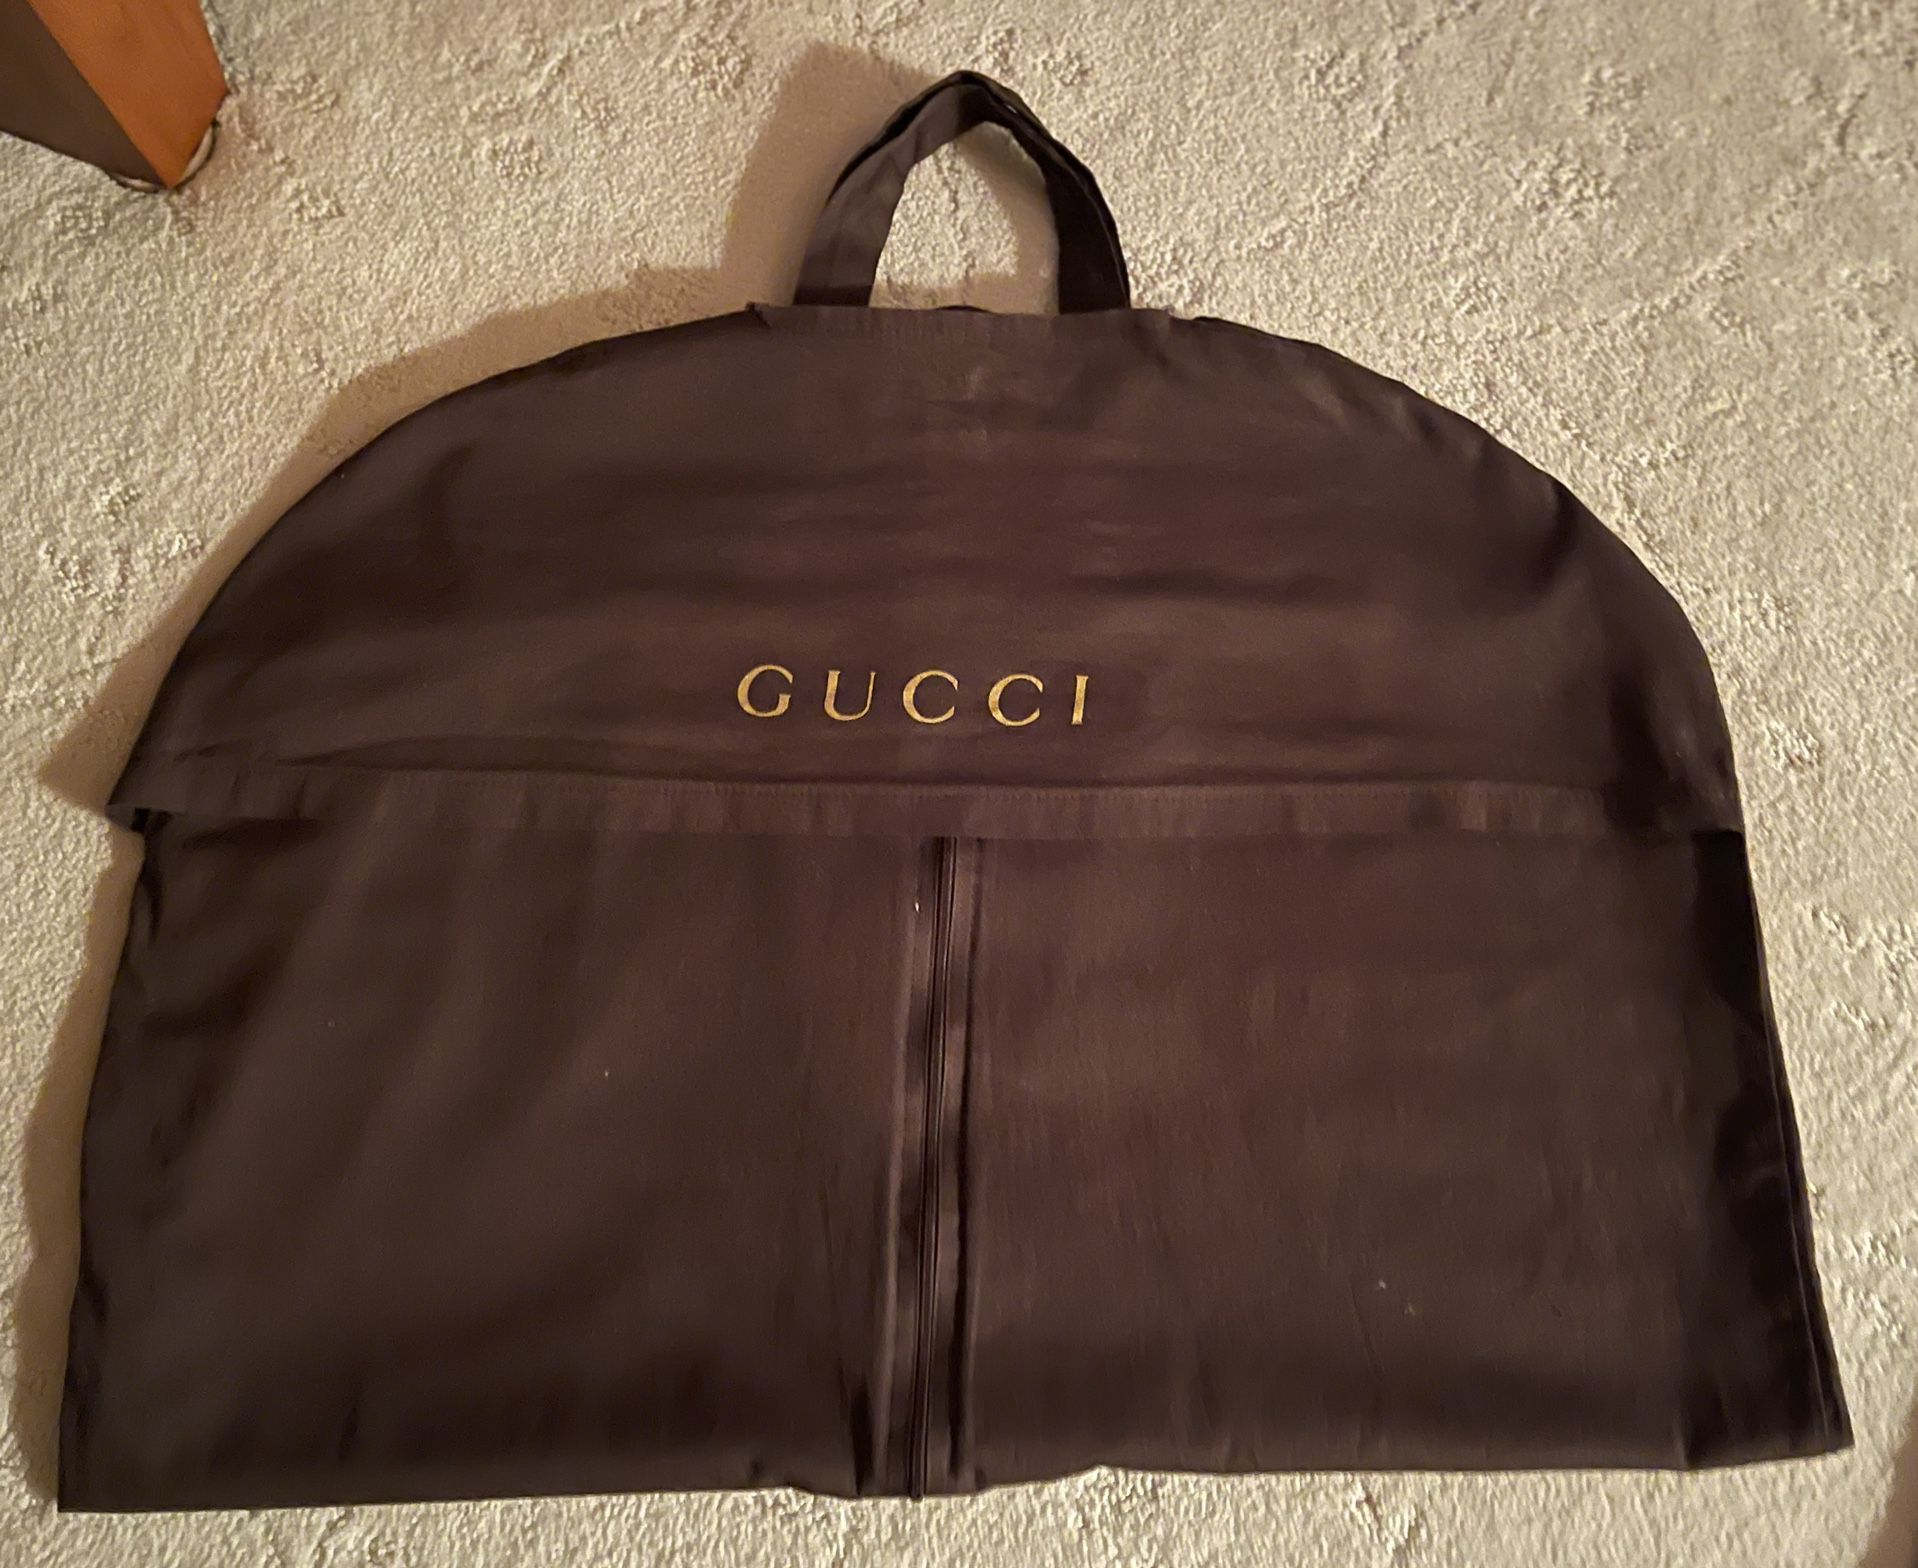 Gucci Garment Bag 